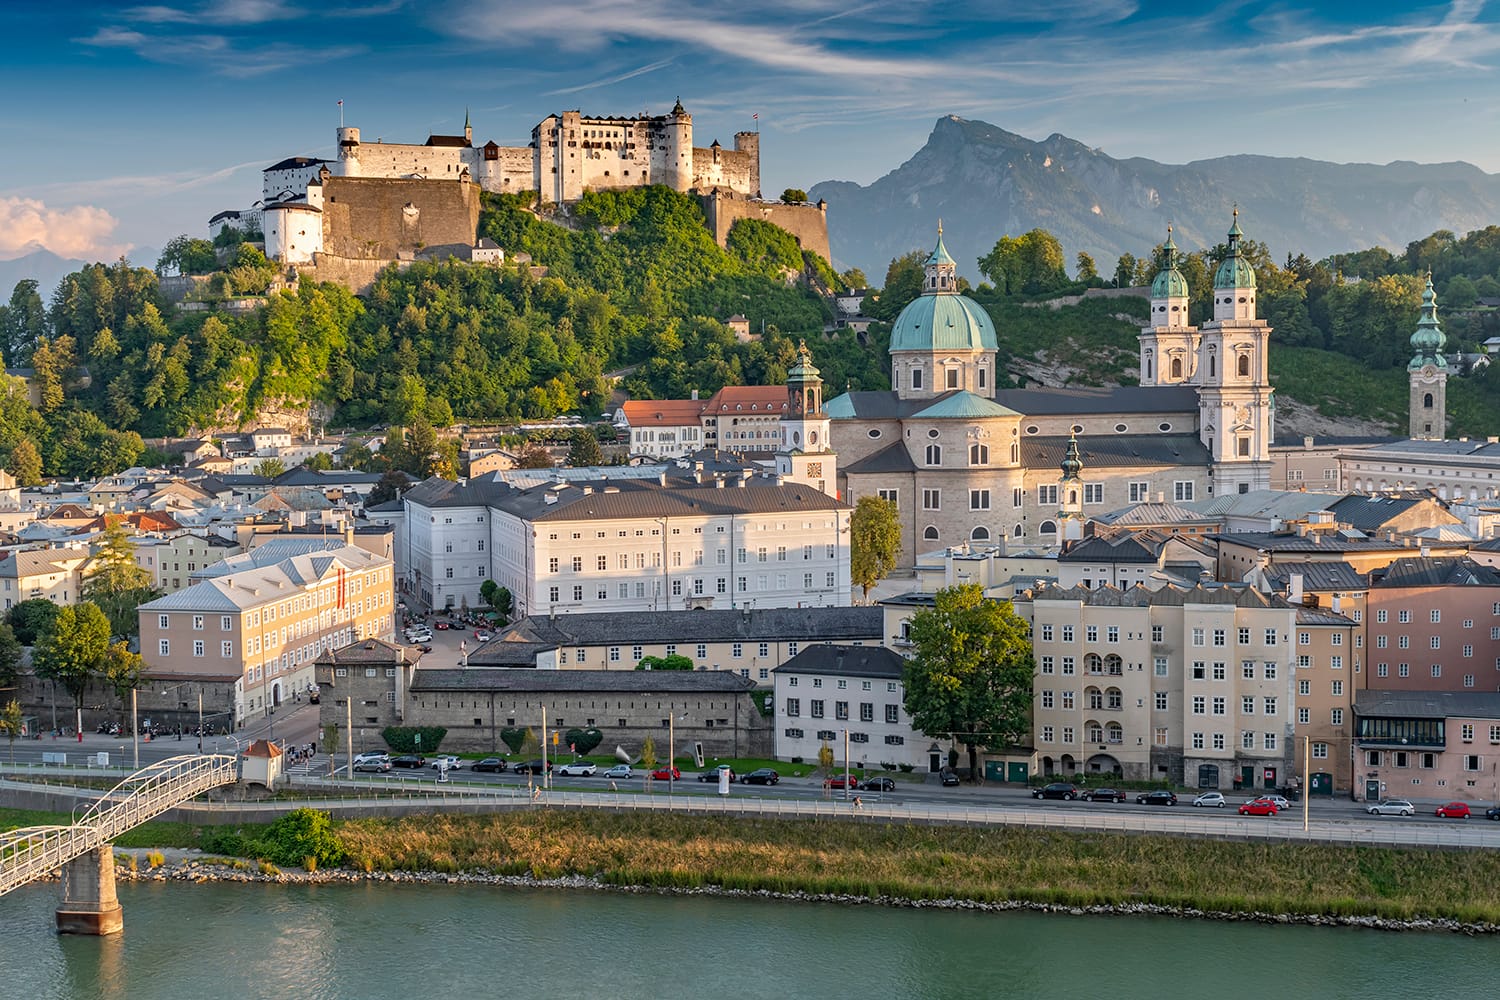 Vista desde Kapuzinerberg en el casco antiguo con el castillo de Hohensalzburg, la catedral de Salzburgo y la iglesia colegiada, Salzburgo, Austria.